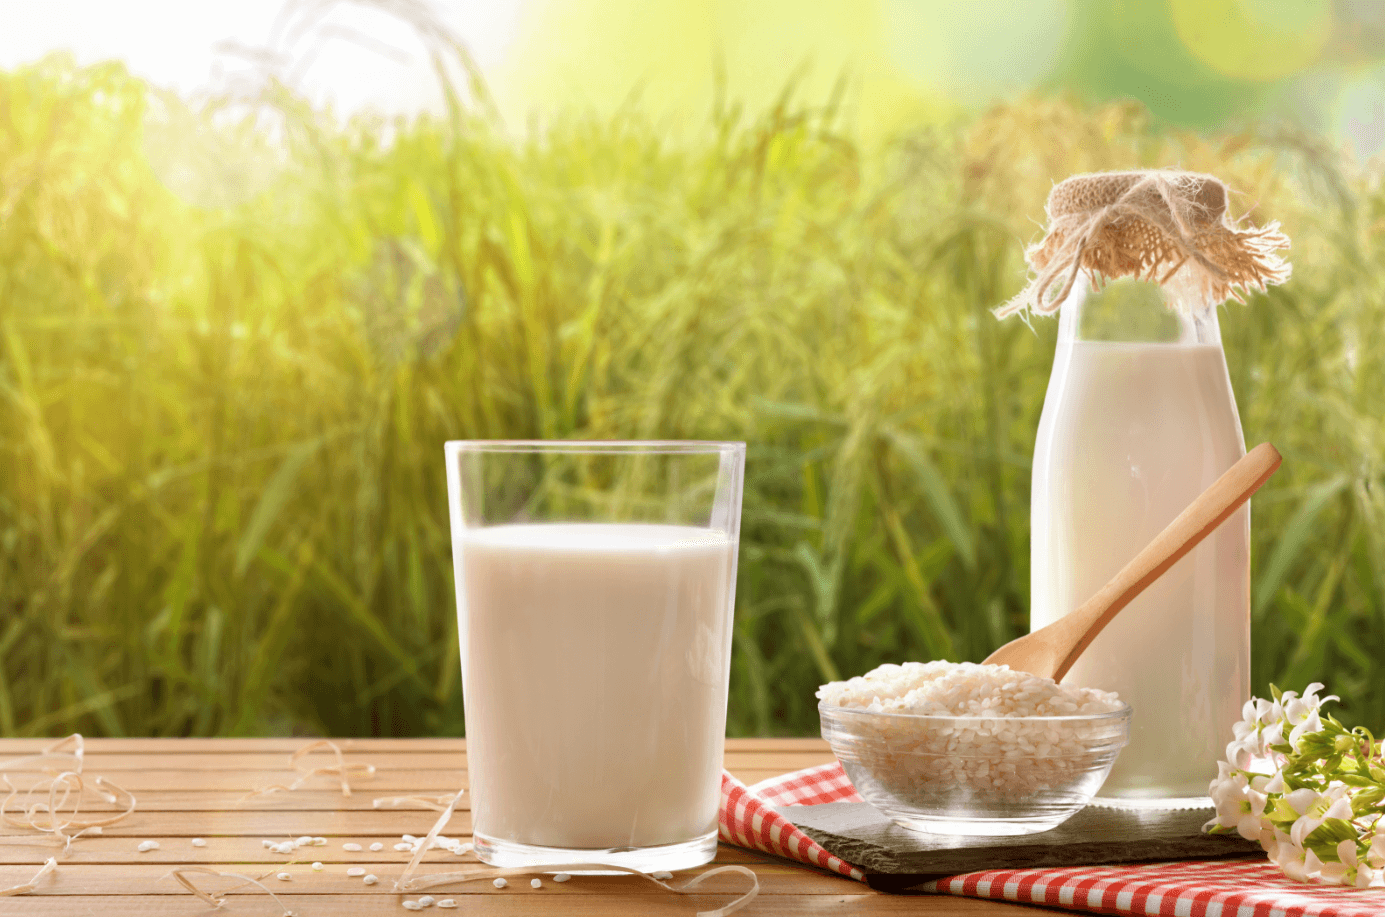 Cách làm sữa gạo lứt bổ dưỡng giảm cân hiệu quả - Học cách làm kem